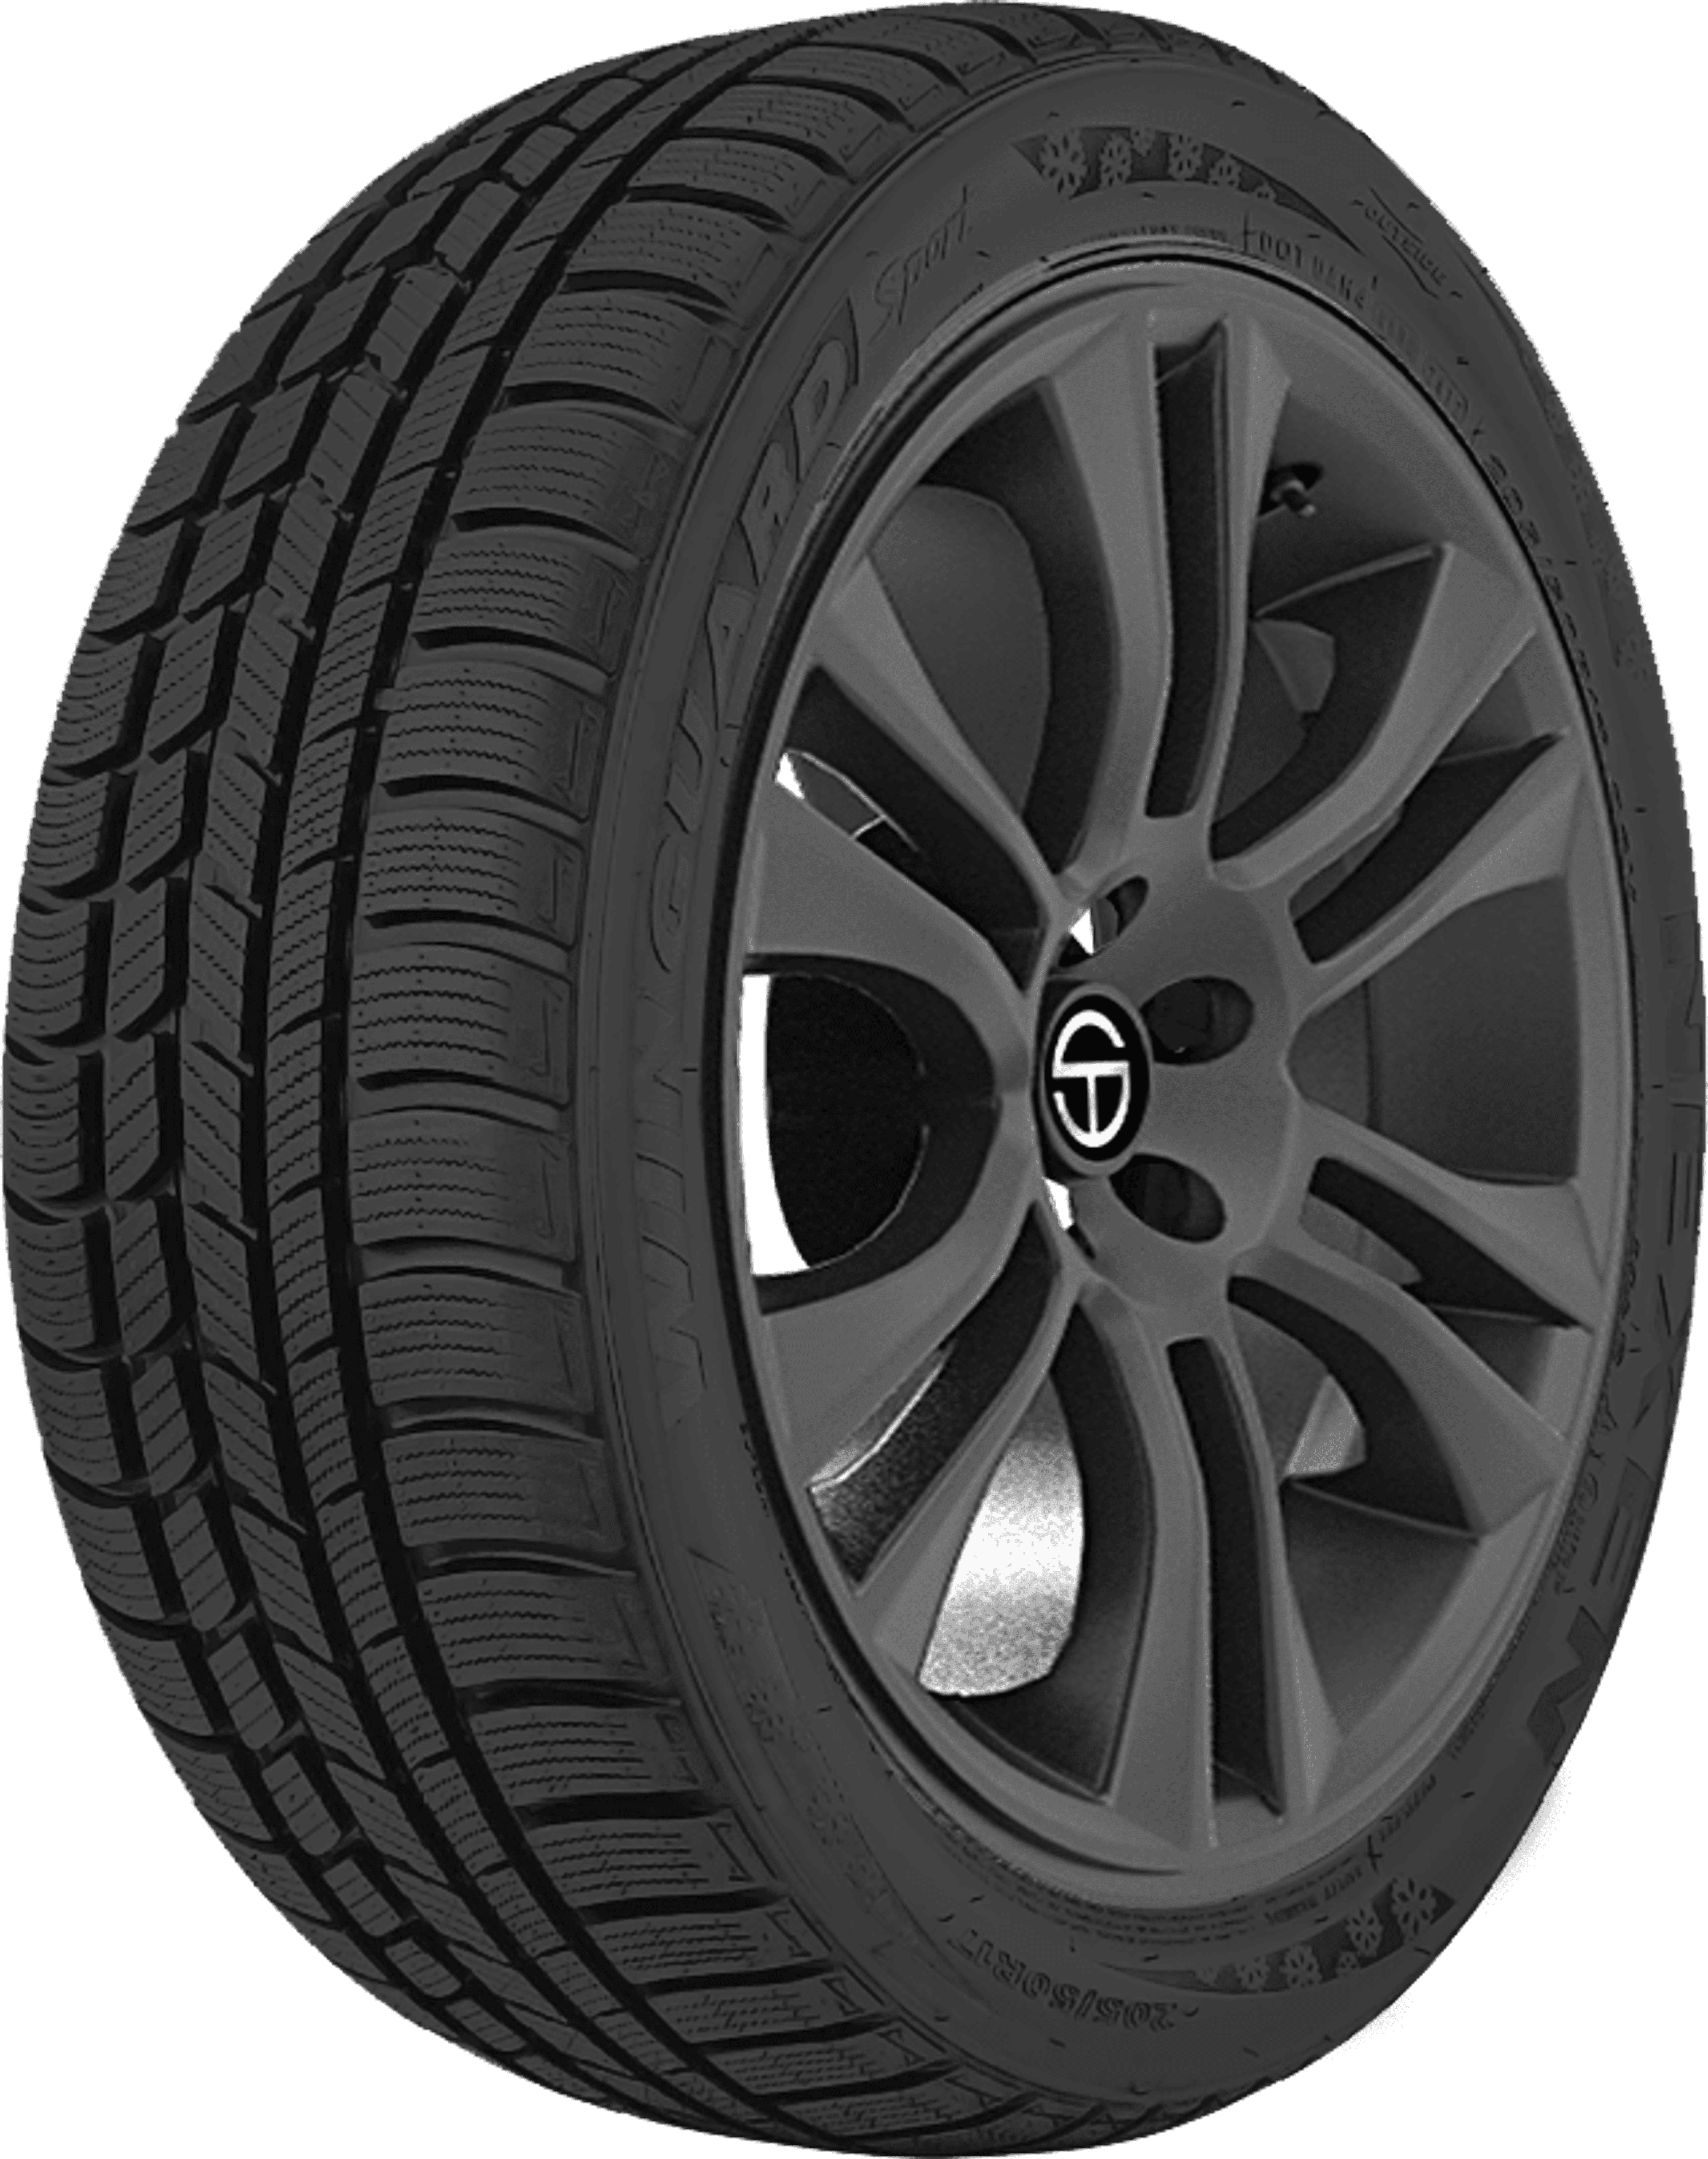 Buy Nexen Winguard Sport Tires Online | SimpleTire